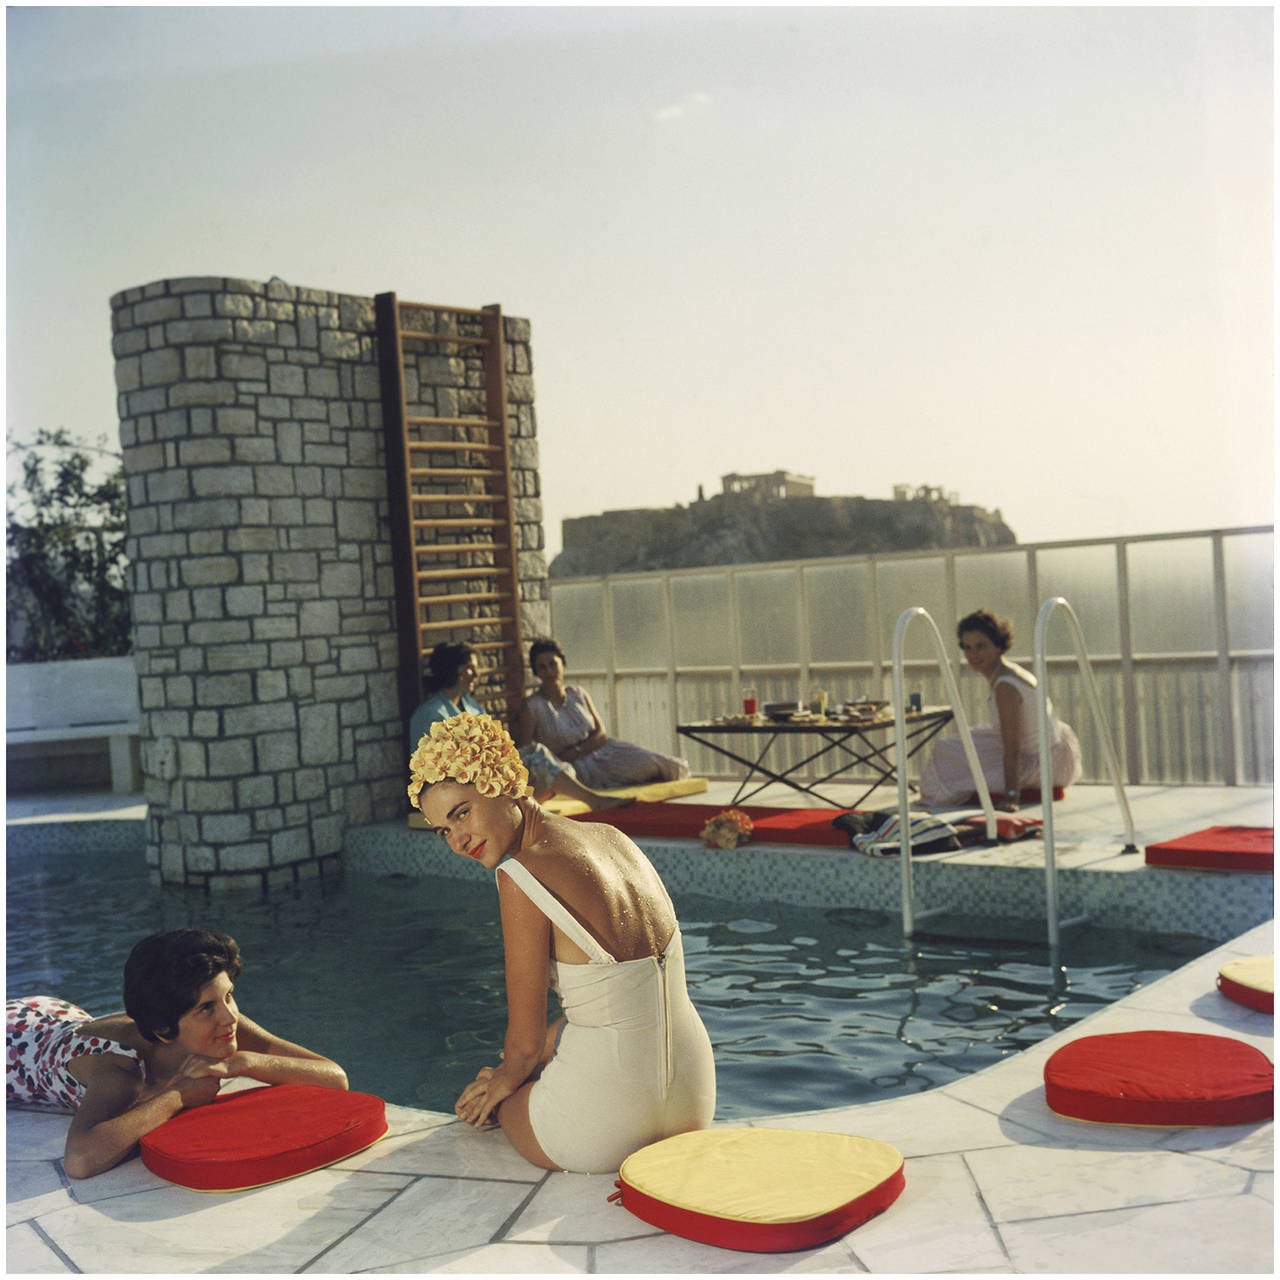 Junge Frauen am Pool des Canellopoulos-Penthouses, Athen, Juli 1961. Im Hintergrund ist die Akropolis zu sehen.

40 x 40 Zoll
$5400

30 x 30 Zoll
$4200

20 x 20 Zoll
$3600

60 x 60 Zoll
$6300 (Giclée-Druck, nicht als Lambda C-Print